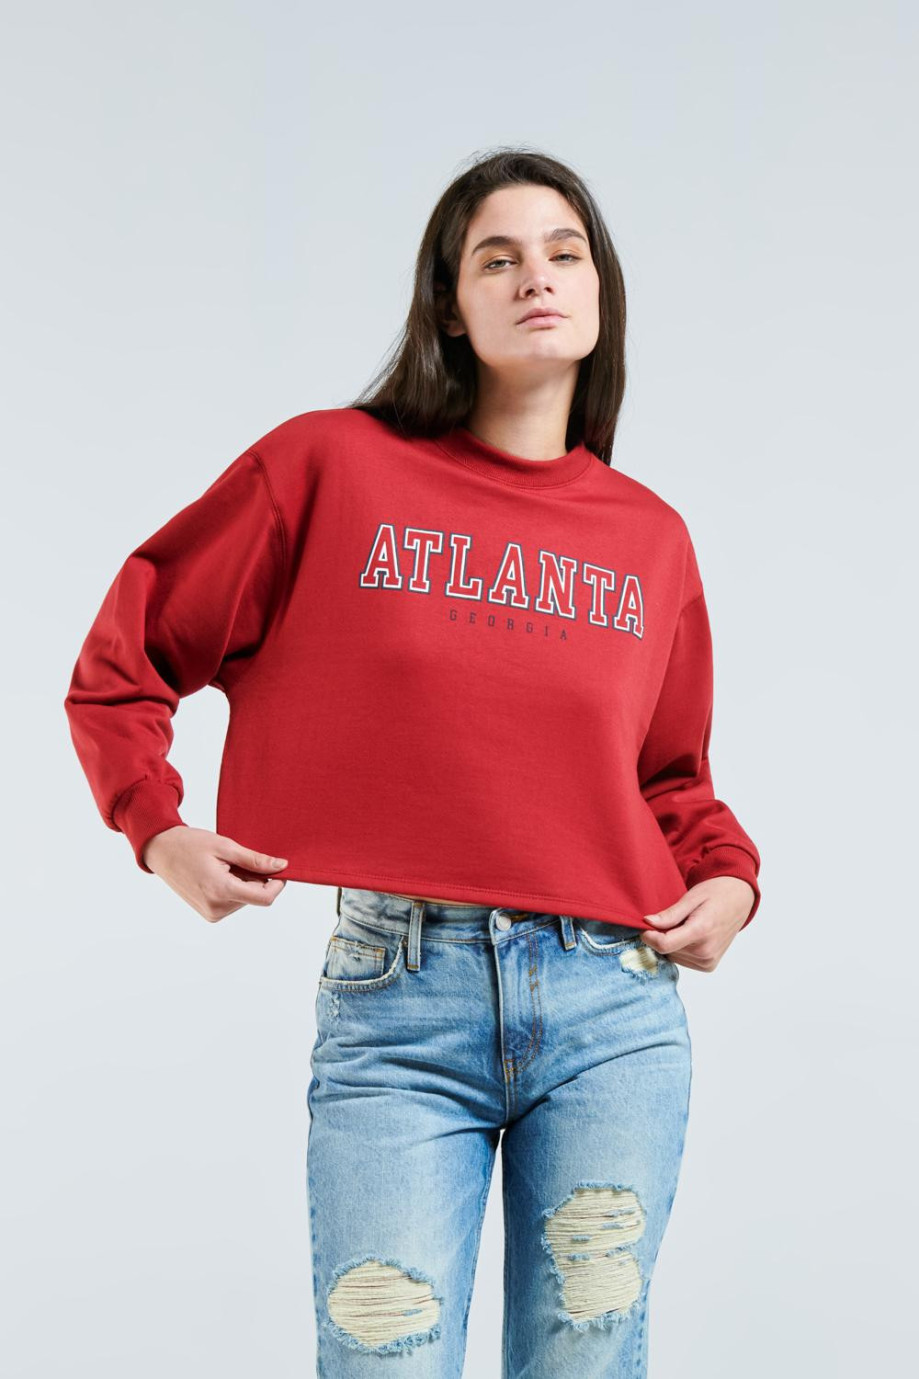 Buzo cuello redondo crop top rojo intenso con diseño college de Atlanta